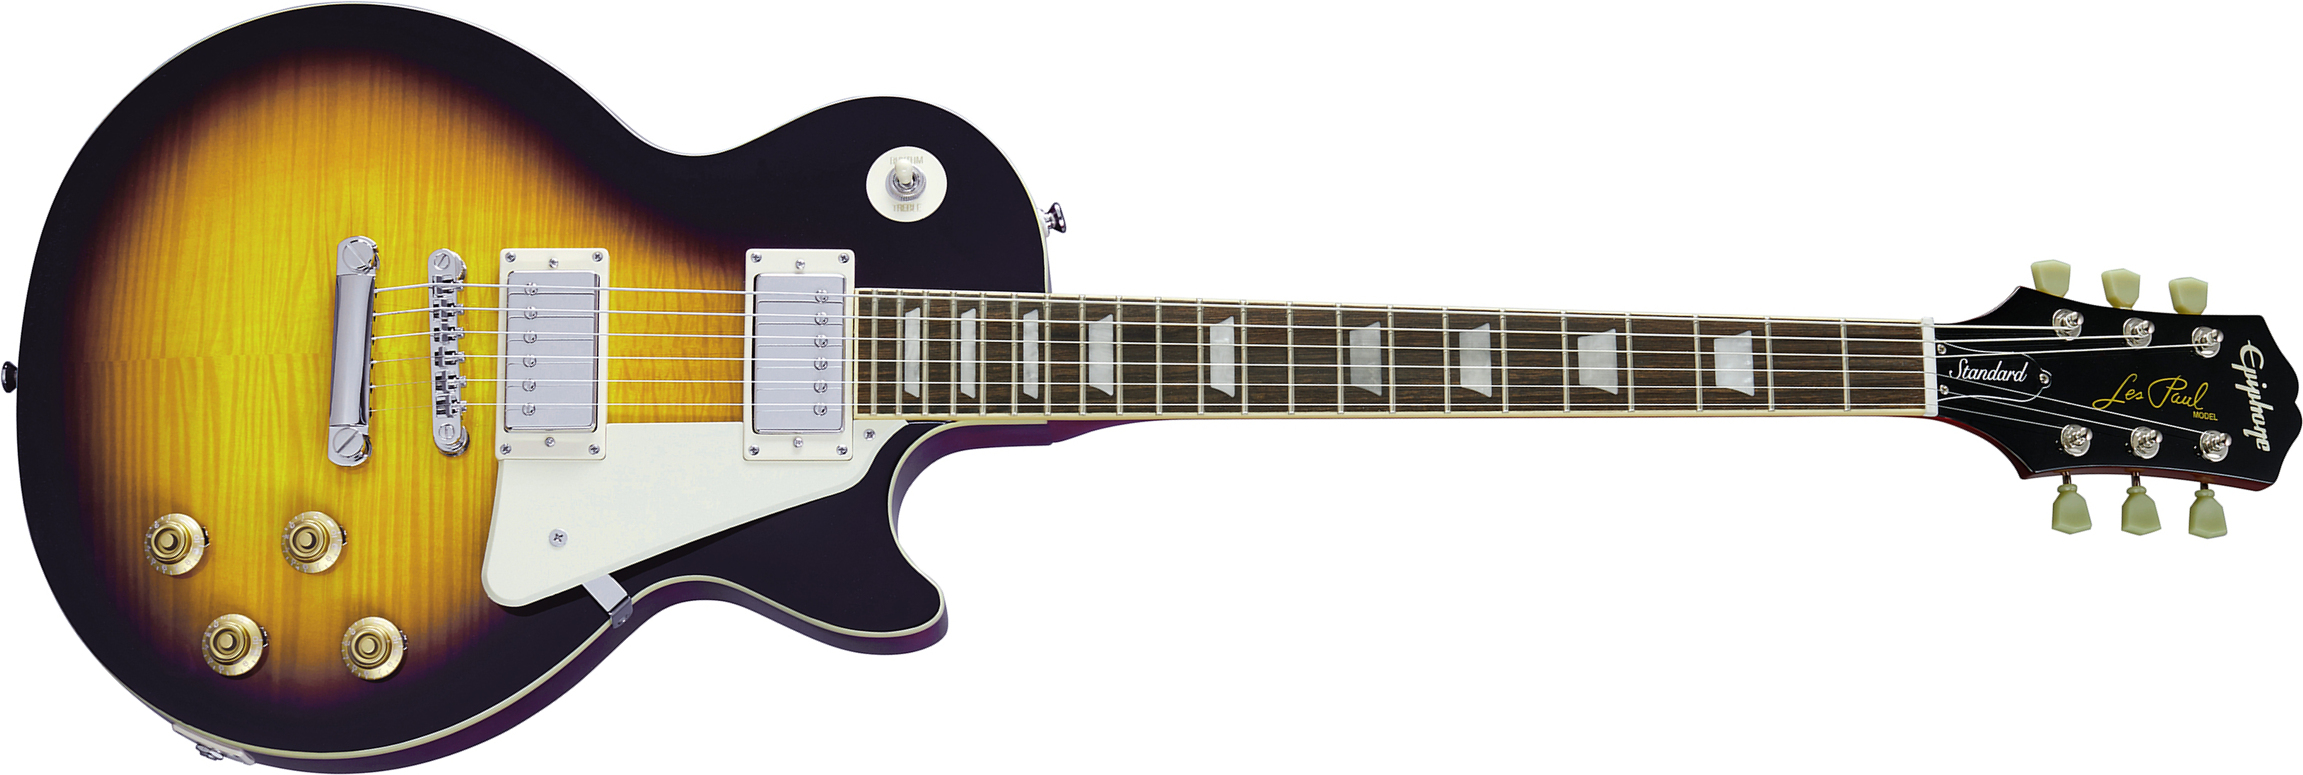 Epiphone Les Paul Standard 50s 2h Ht Rw - Vintage Sunburst - Single-Cut-E-Gitarre - Main picture